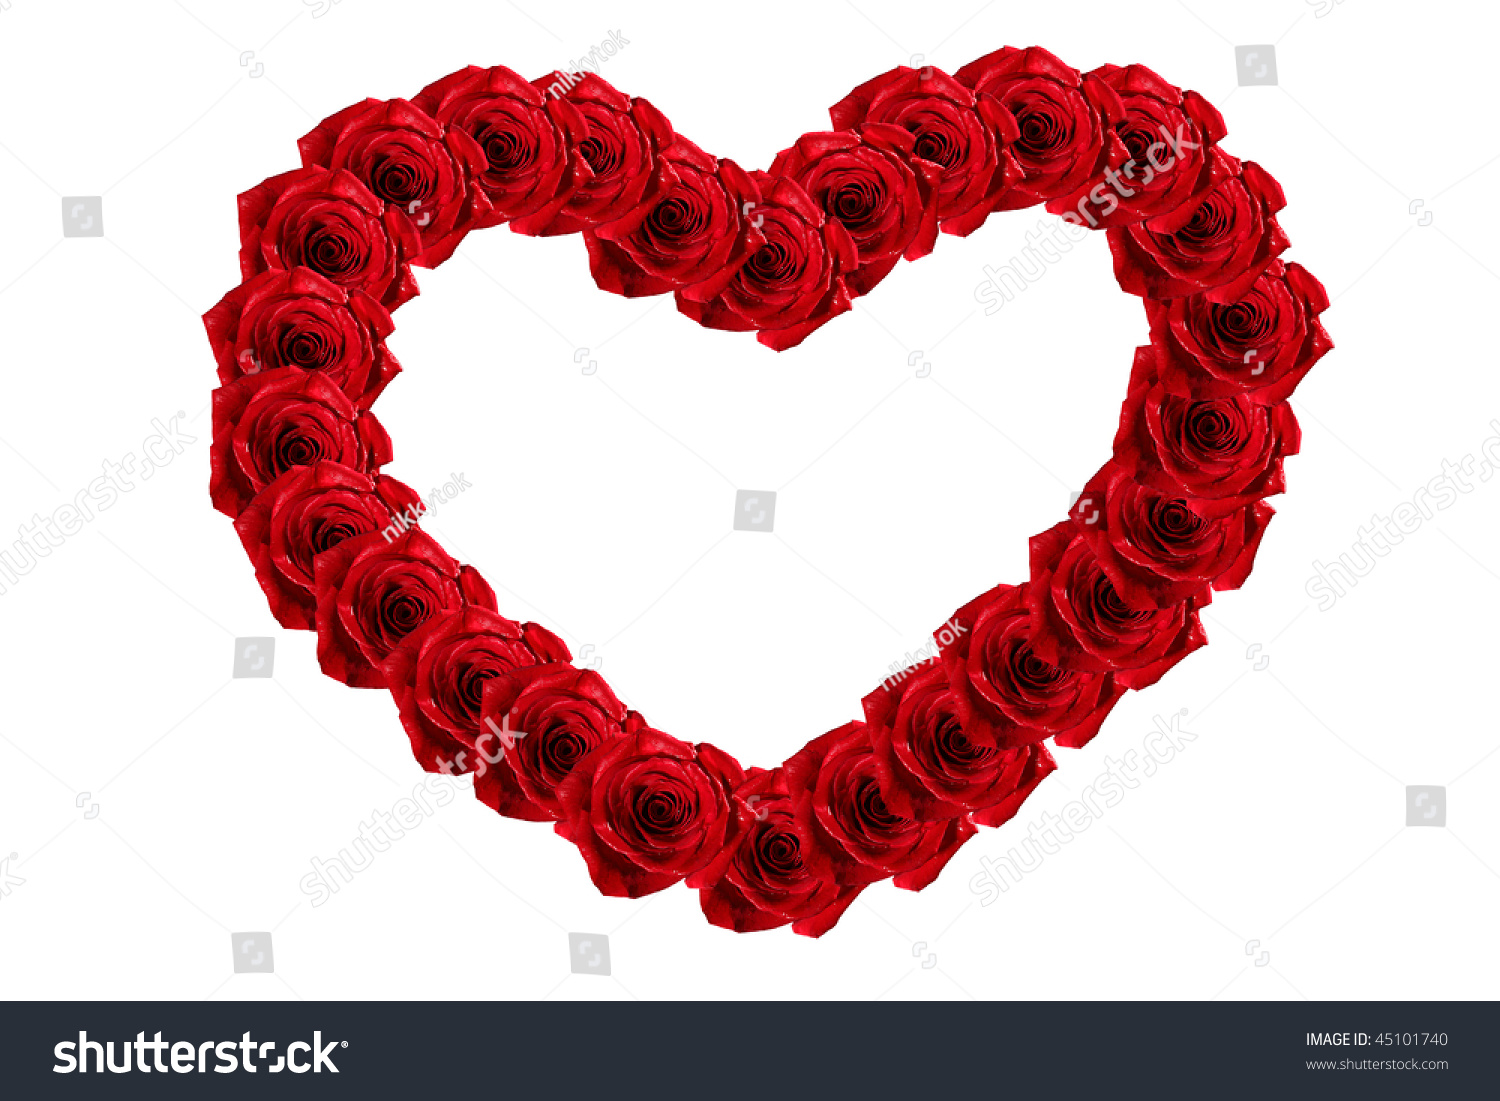 Rose Heart Frame Stock Photo 45101740 - Shutterstock